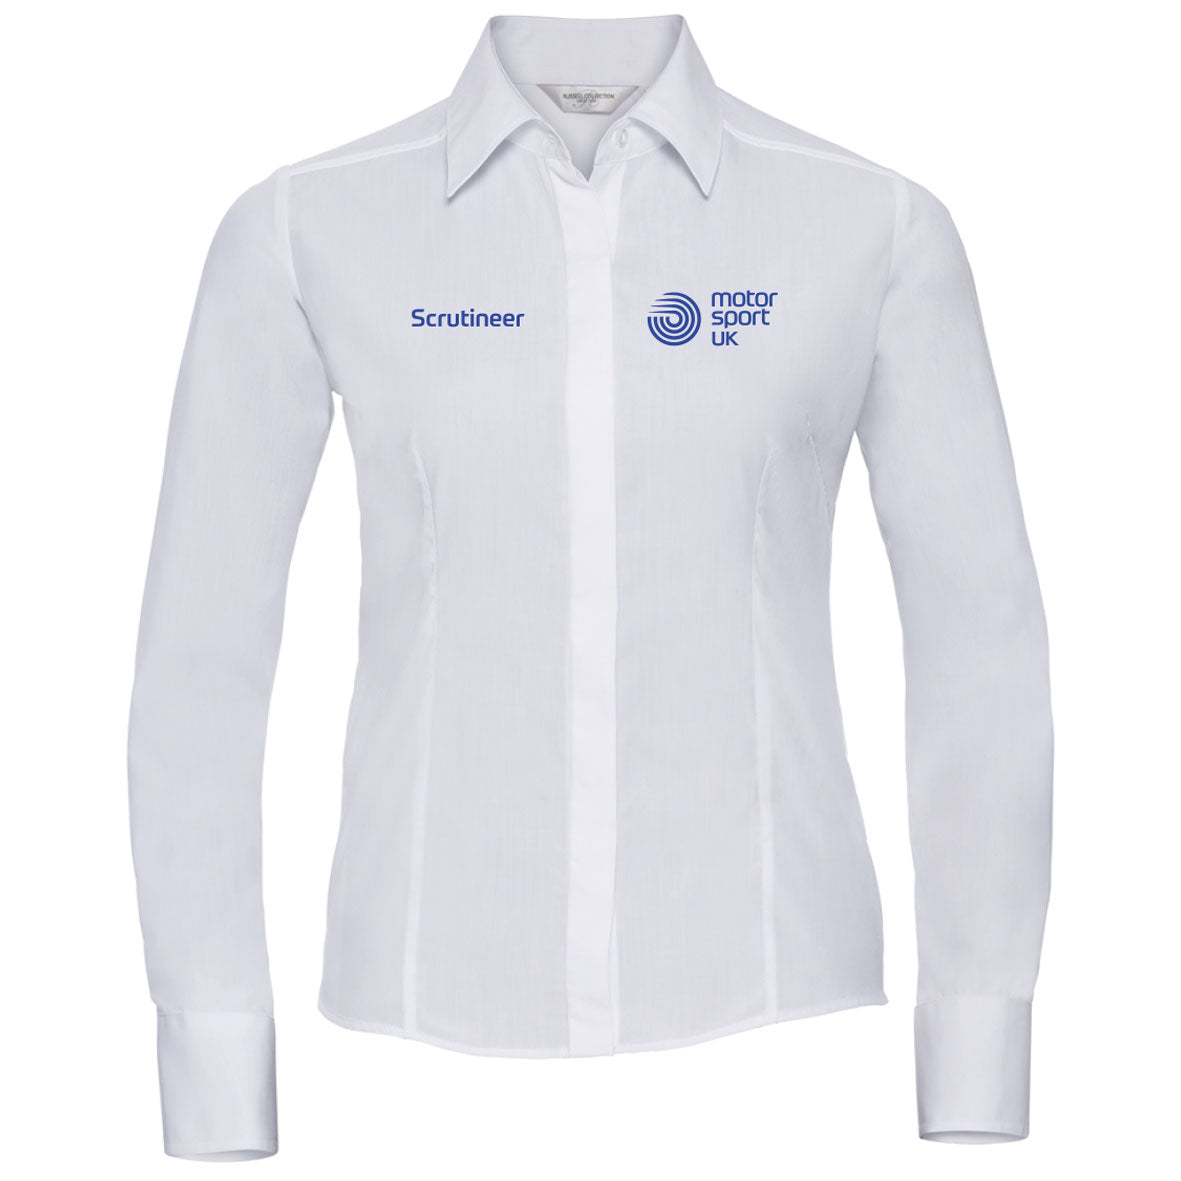 MSUK Ladies L/S Shirt - White